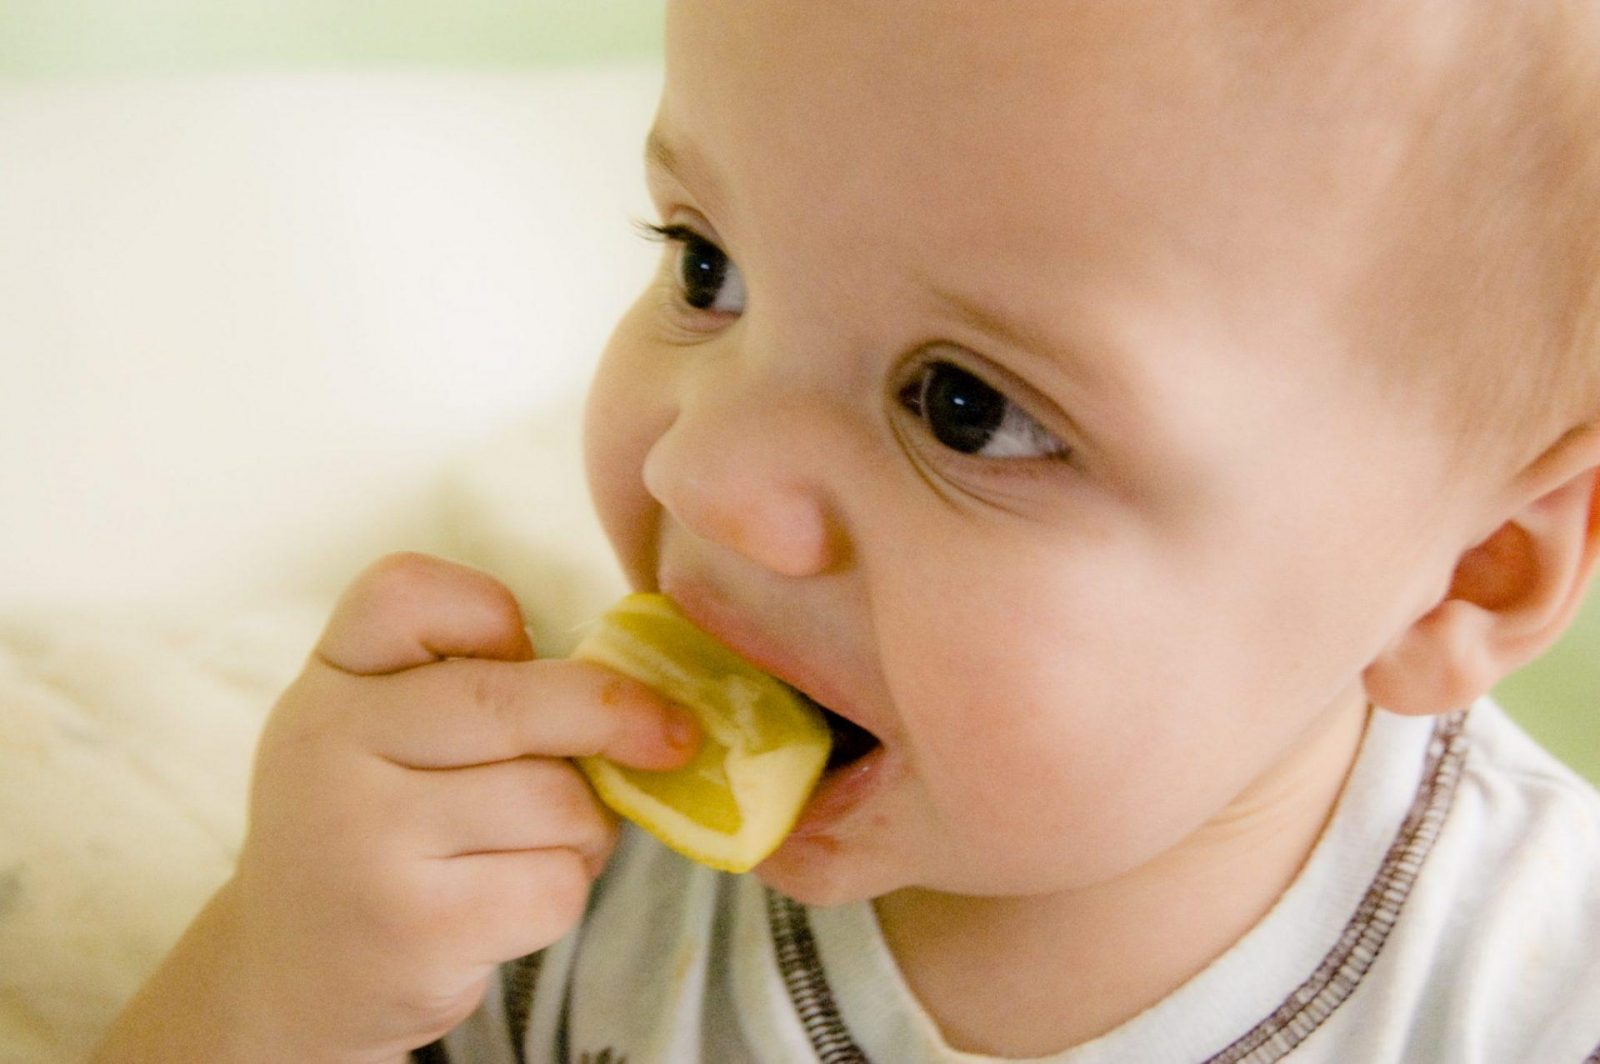 Higiena jamy ustnej niemowlaka